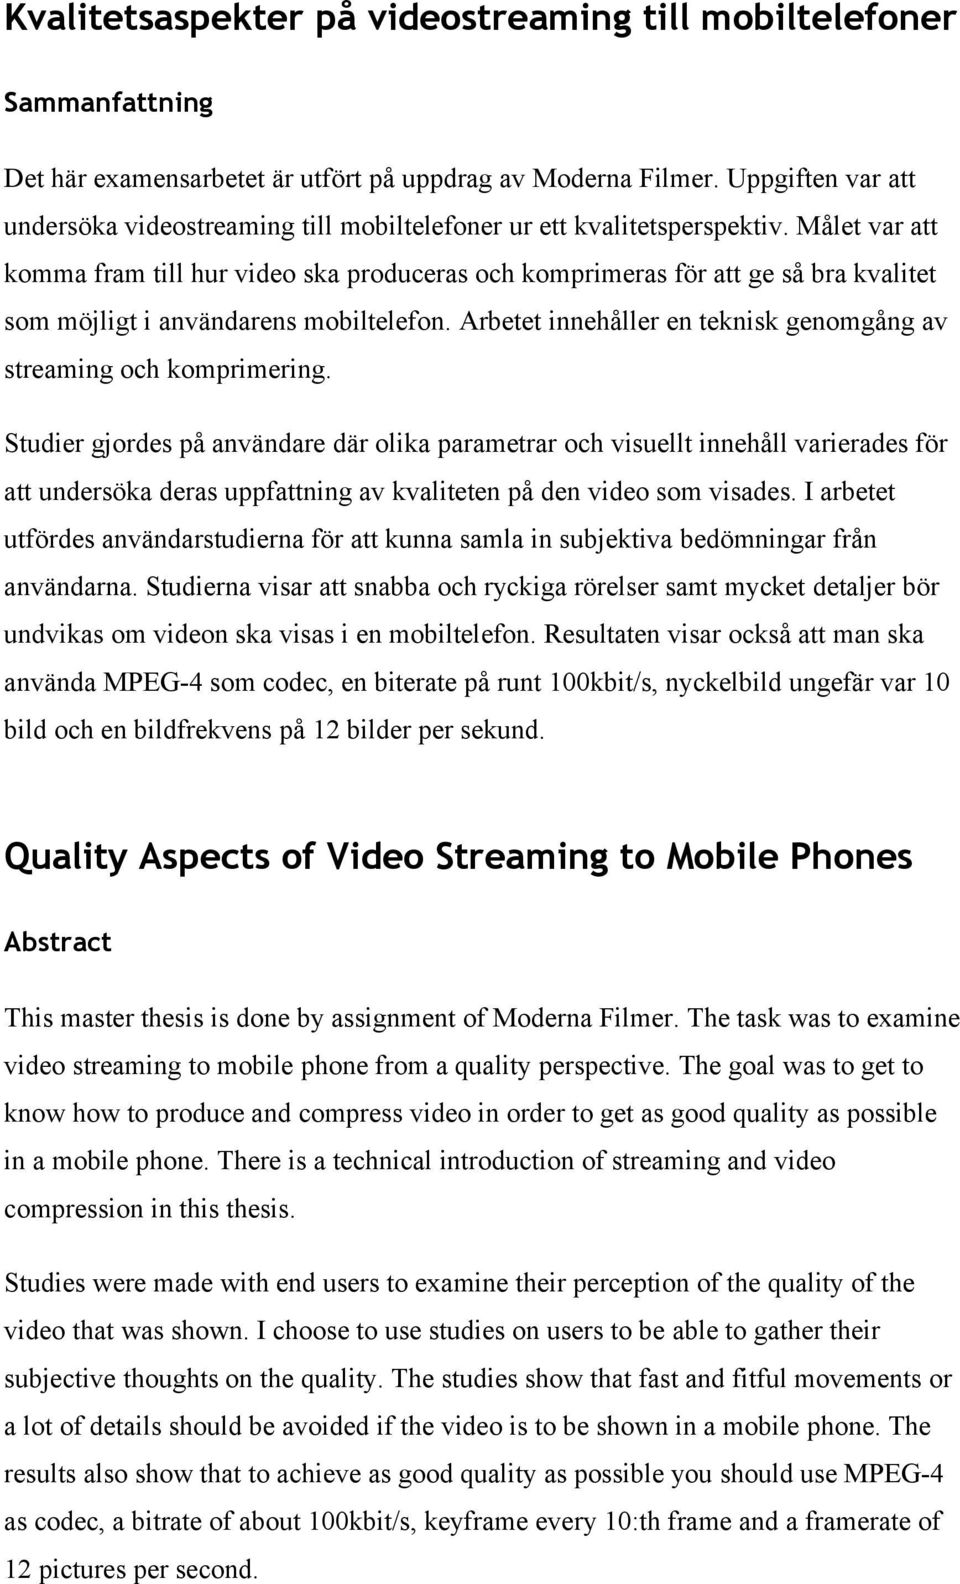 Målet var att komma fram till hur video ska produceras och komprimeras för att ge så bra kvalitet som möjligt i användarens mobiltelefon.